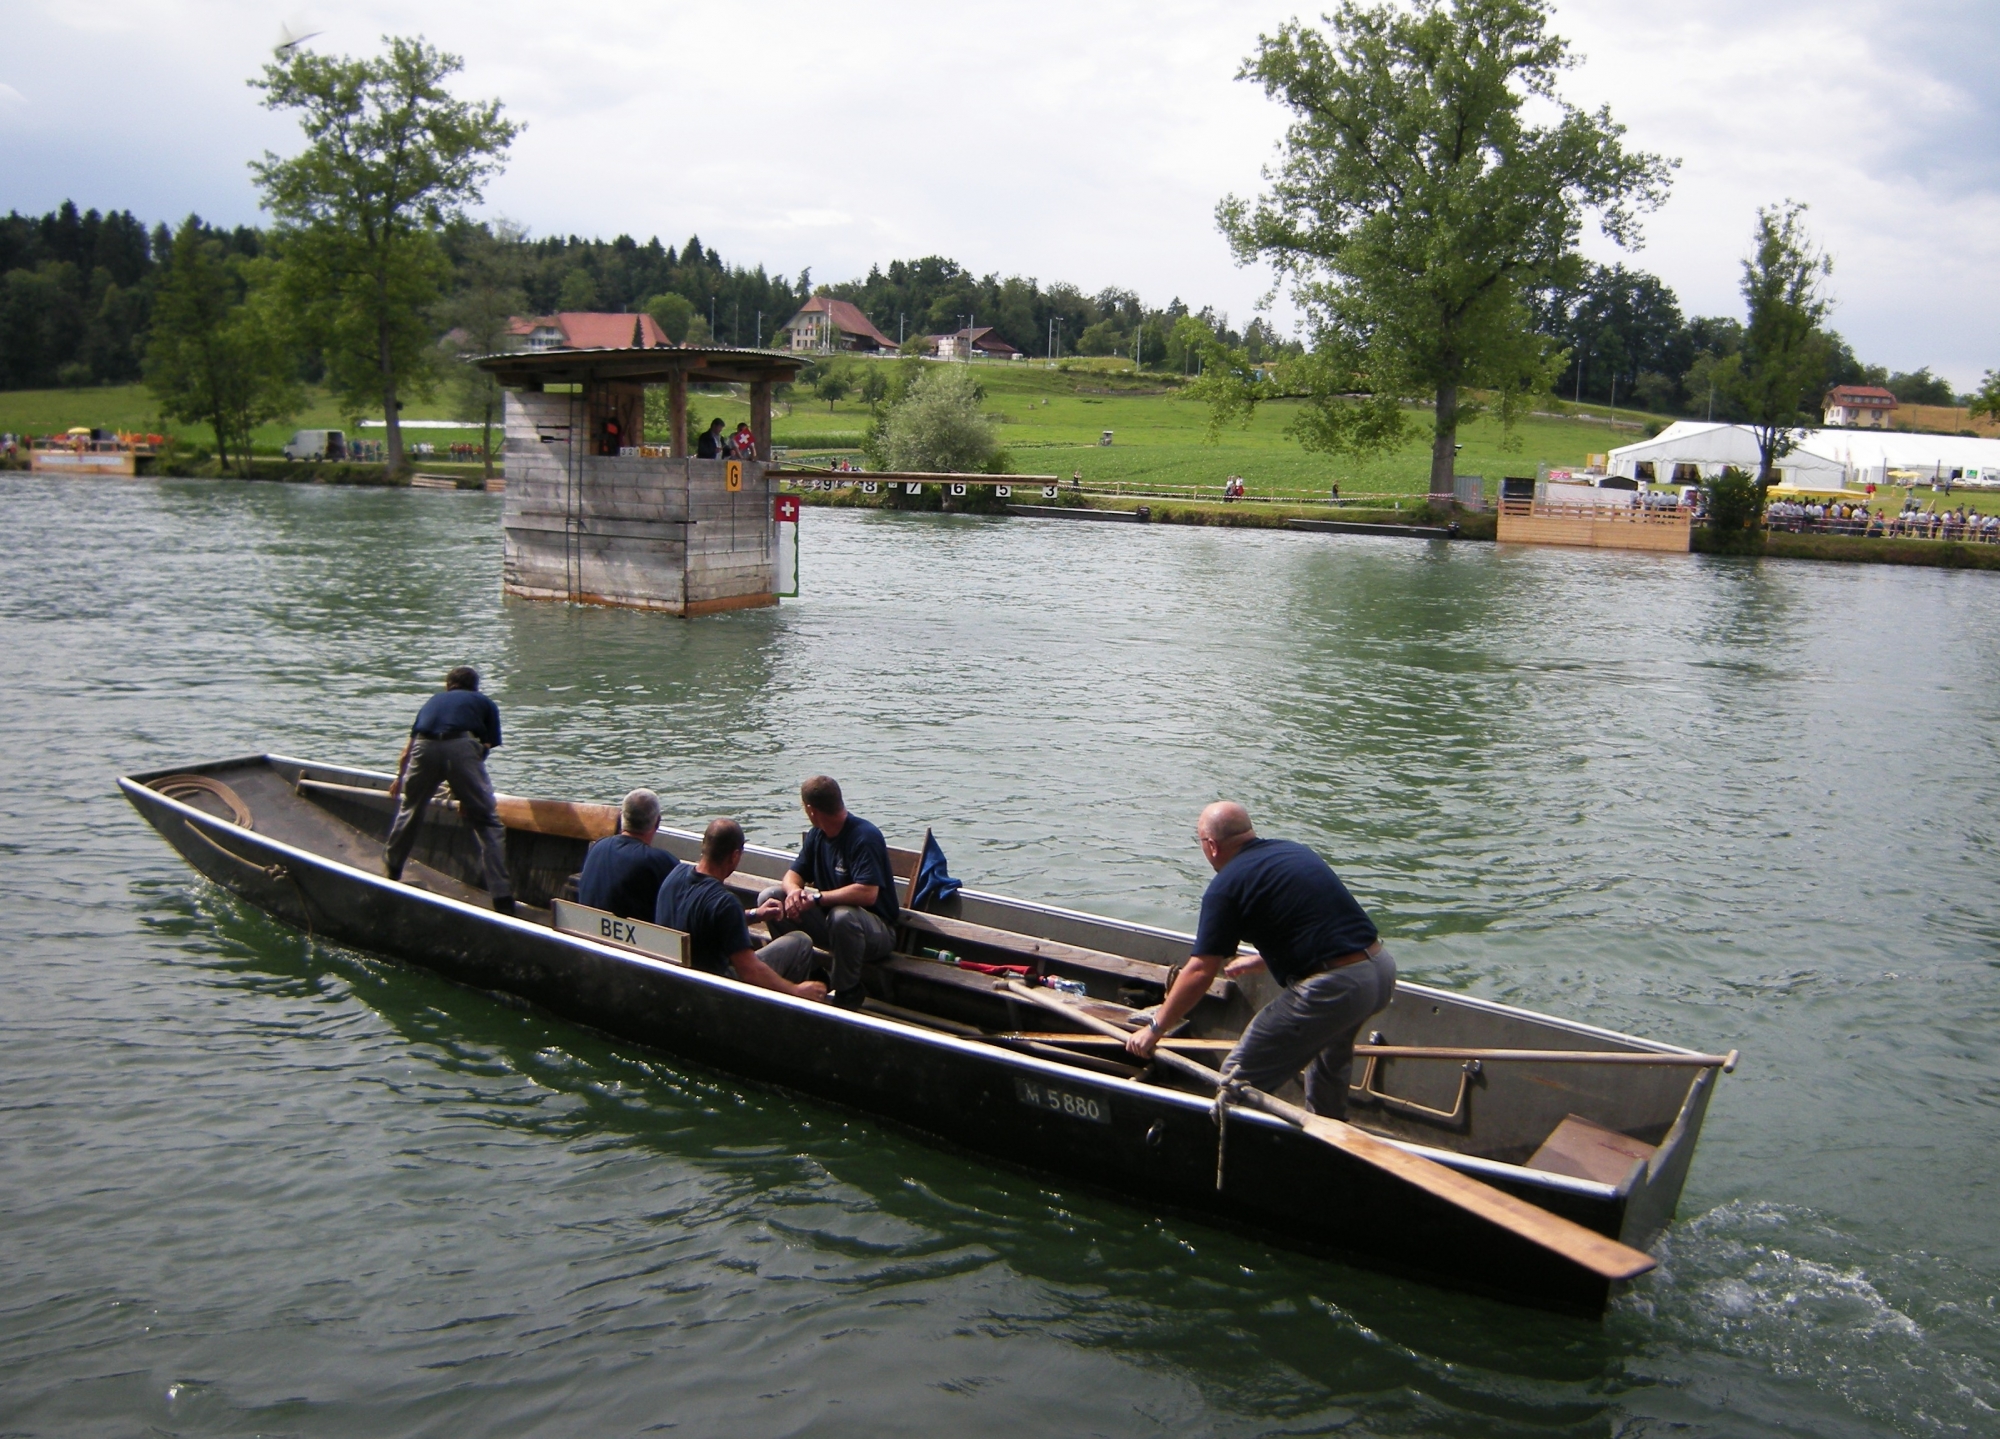 Chaque année, les pontonniers bellerins participent à des concours de navigation organisés surtout en Suisse alémanique.



DR